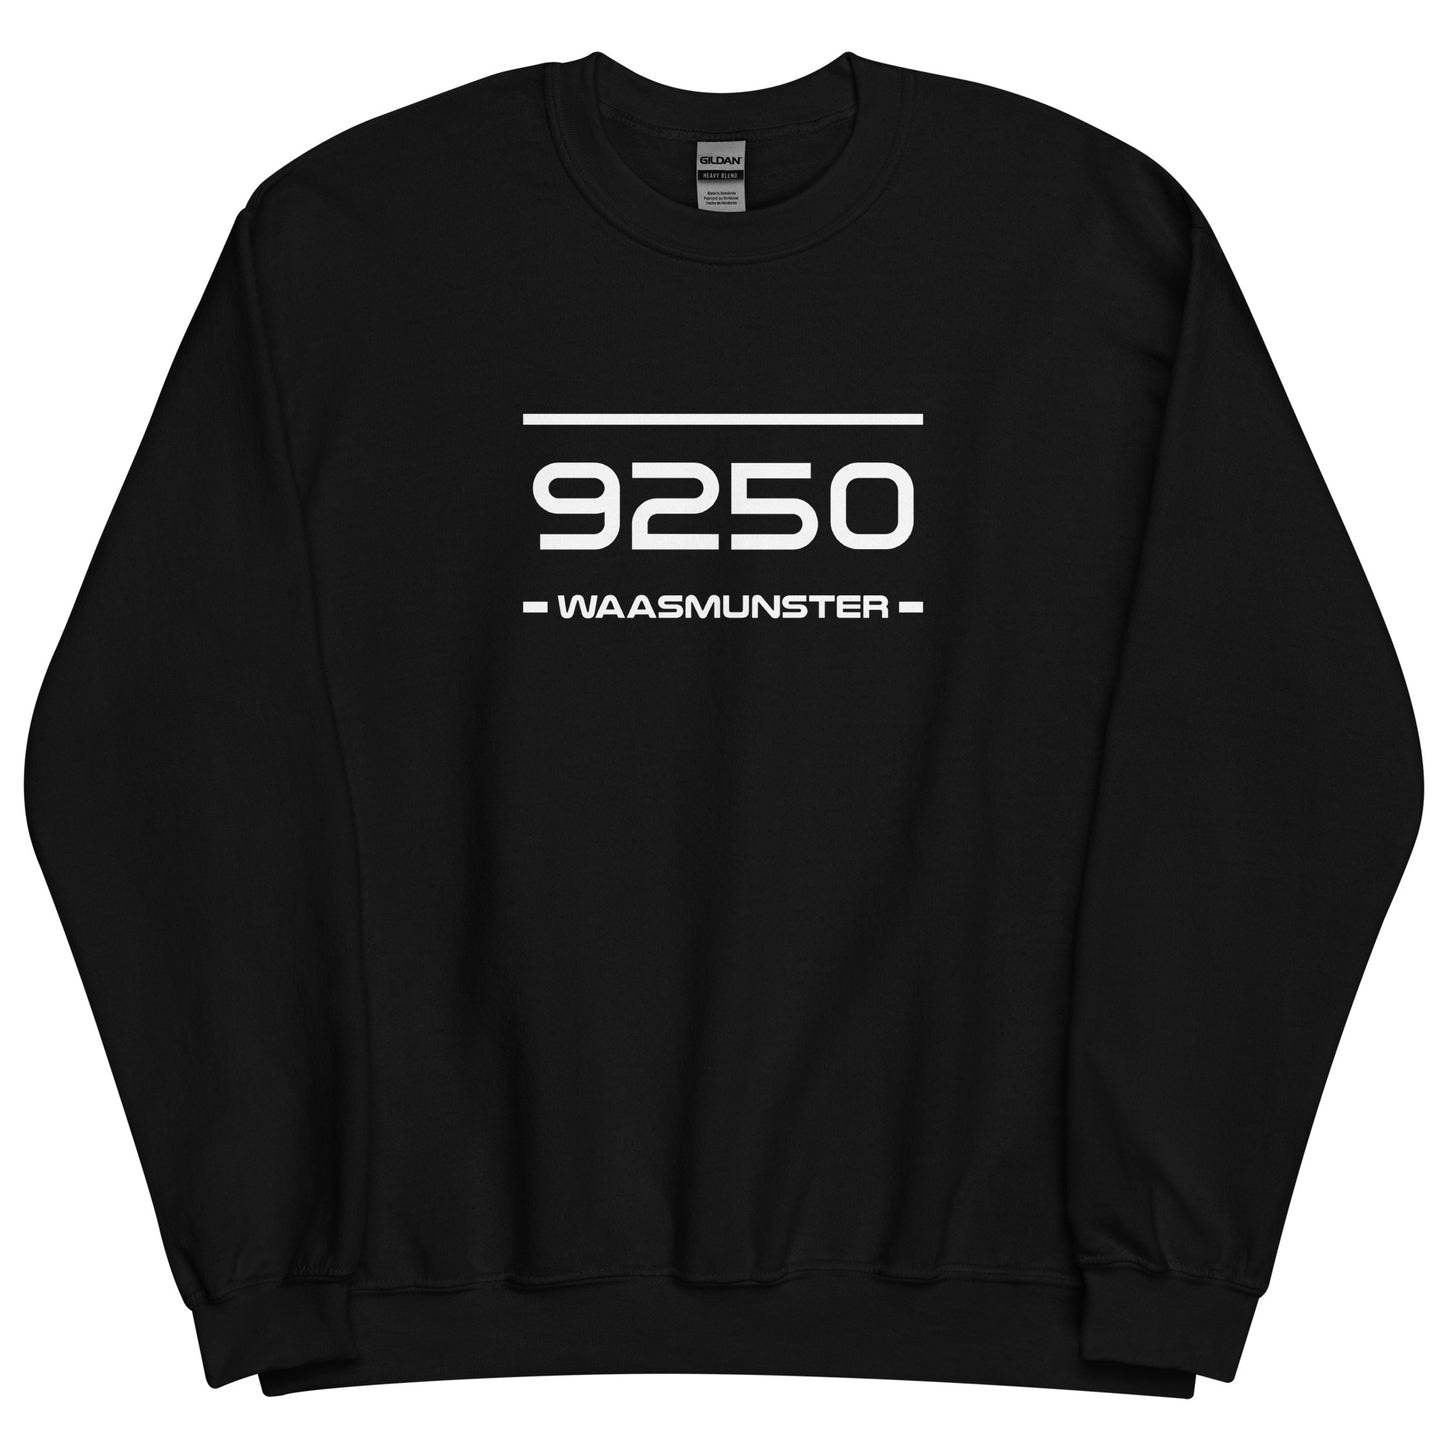 Sweater - 9250 - Waasmunster (M/V)